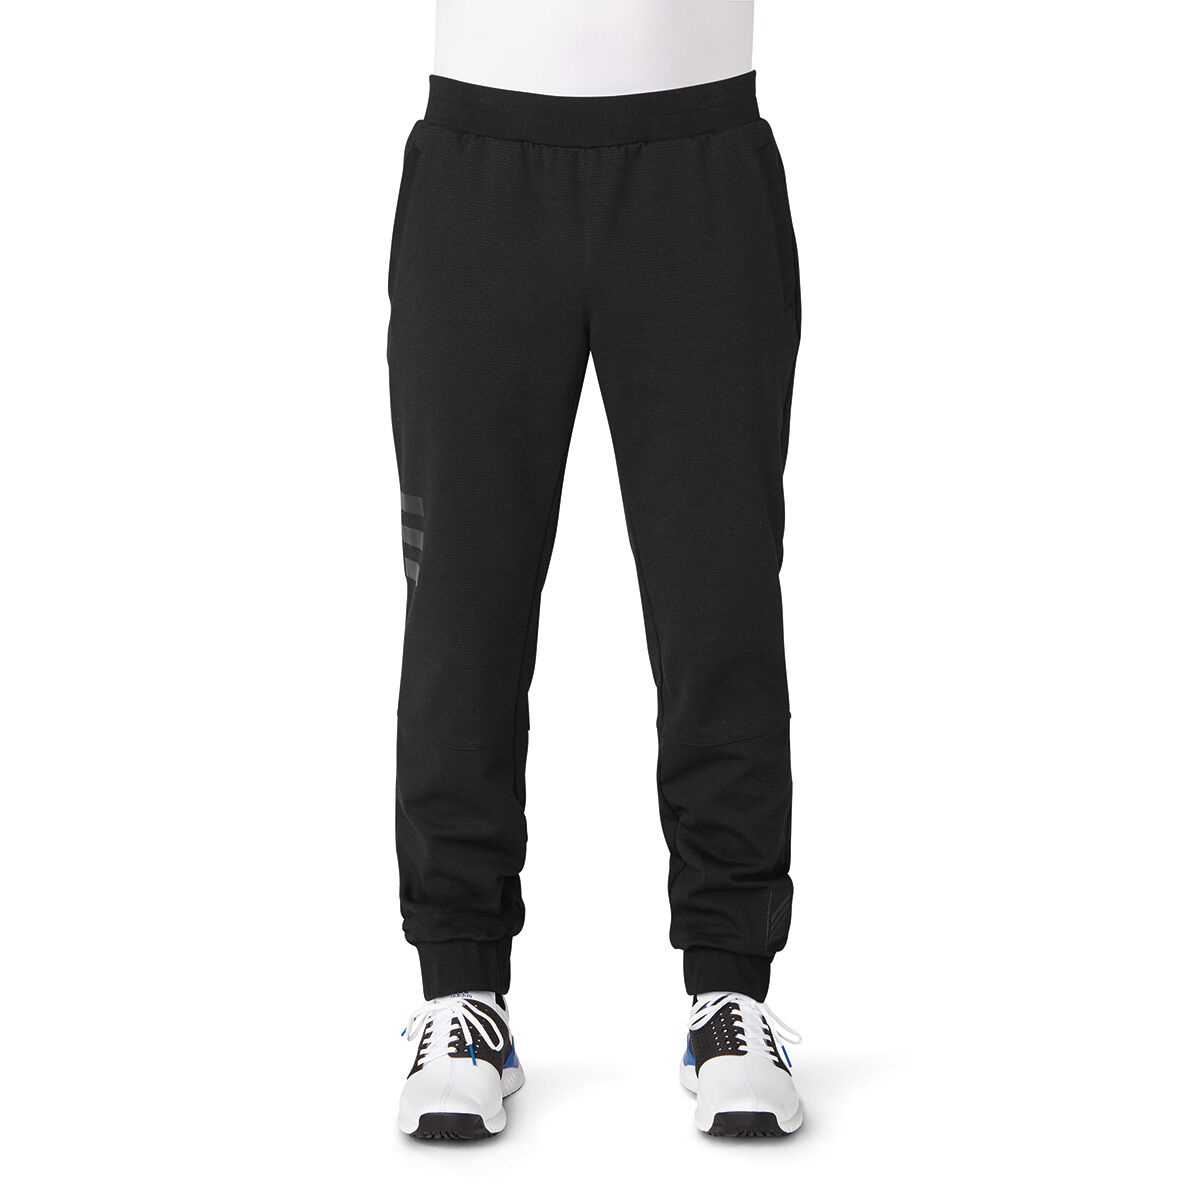 adicross range jogger pants